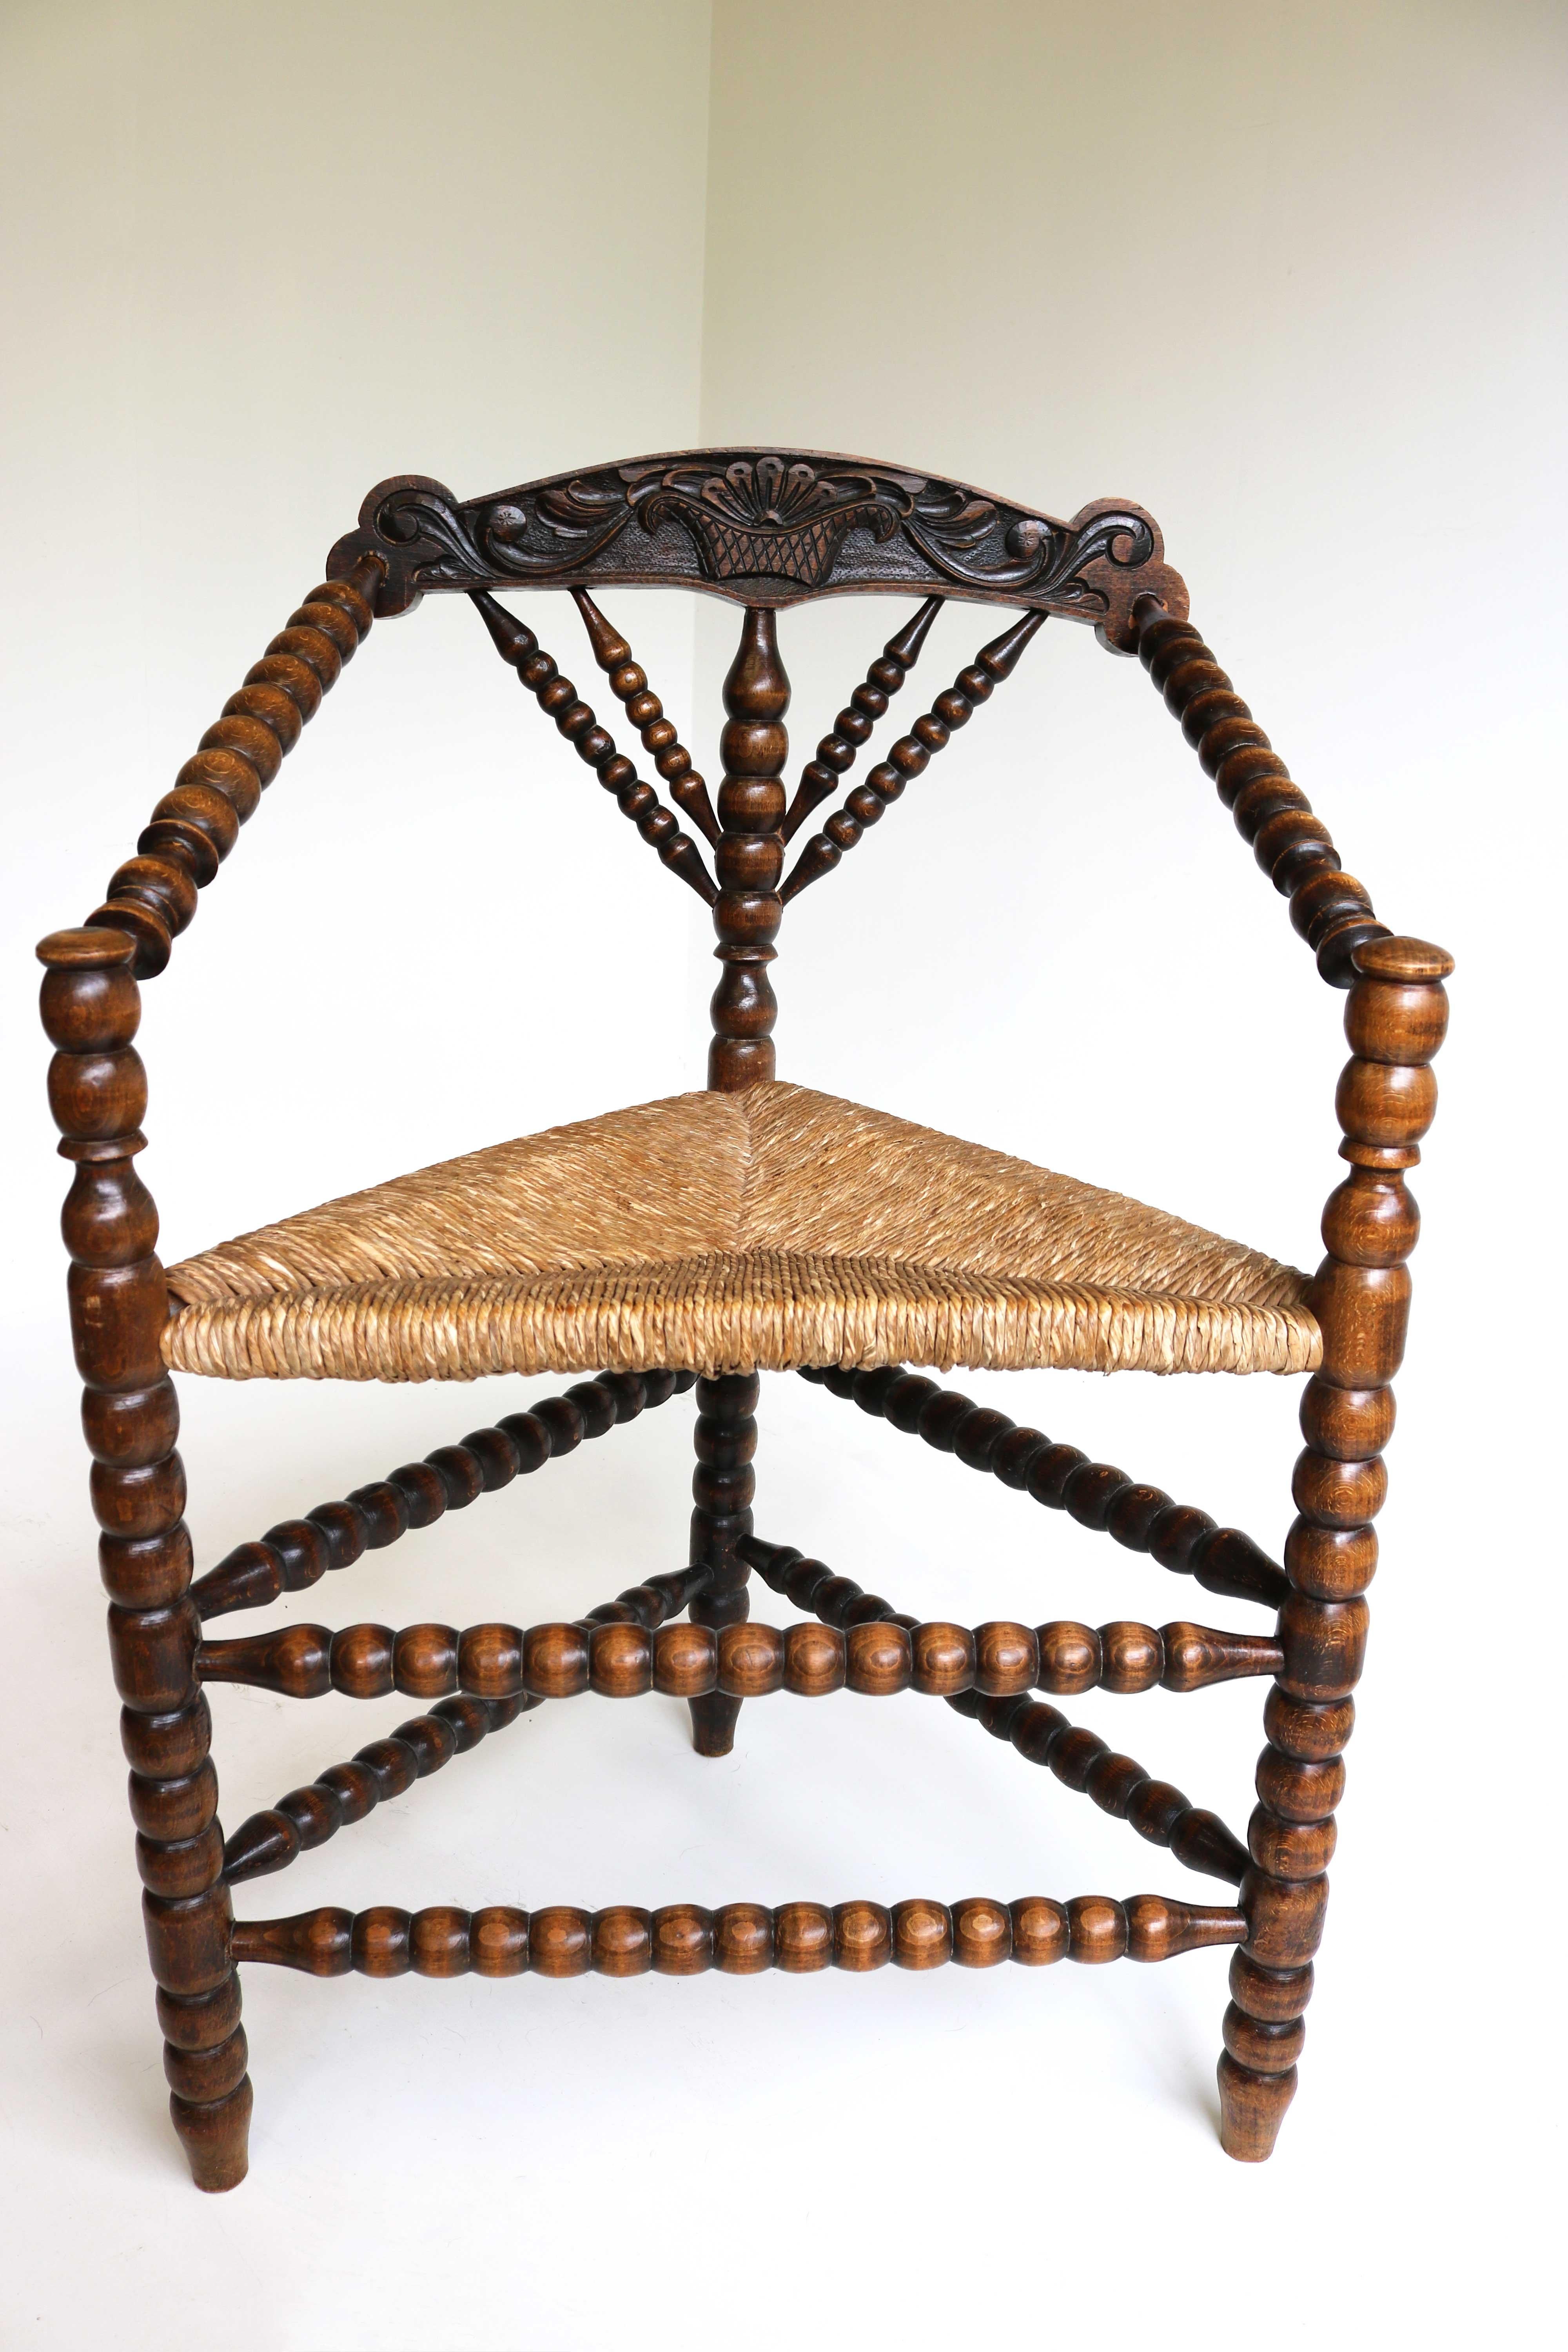 Fauteuil en bois tourné aux fuseaux de la fin du 19e siècle avec assise en jonc, vers 1900
Fabriqué aux Pays-Bas.
Magnifique chaise ancienne pour bobines/tricot avec trois pieds et un panier de fleurs sculpté à l'arrière, très décoratif.
Cette